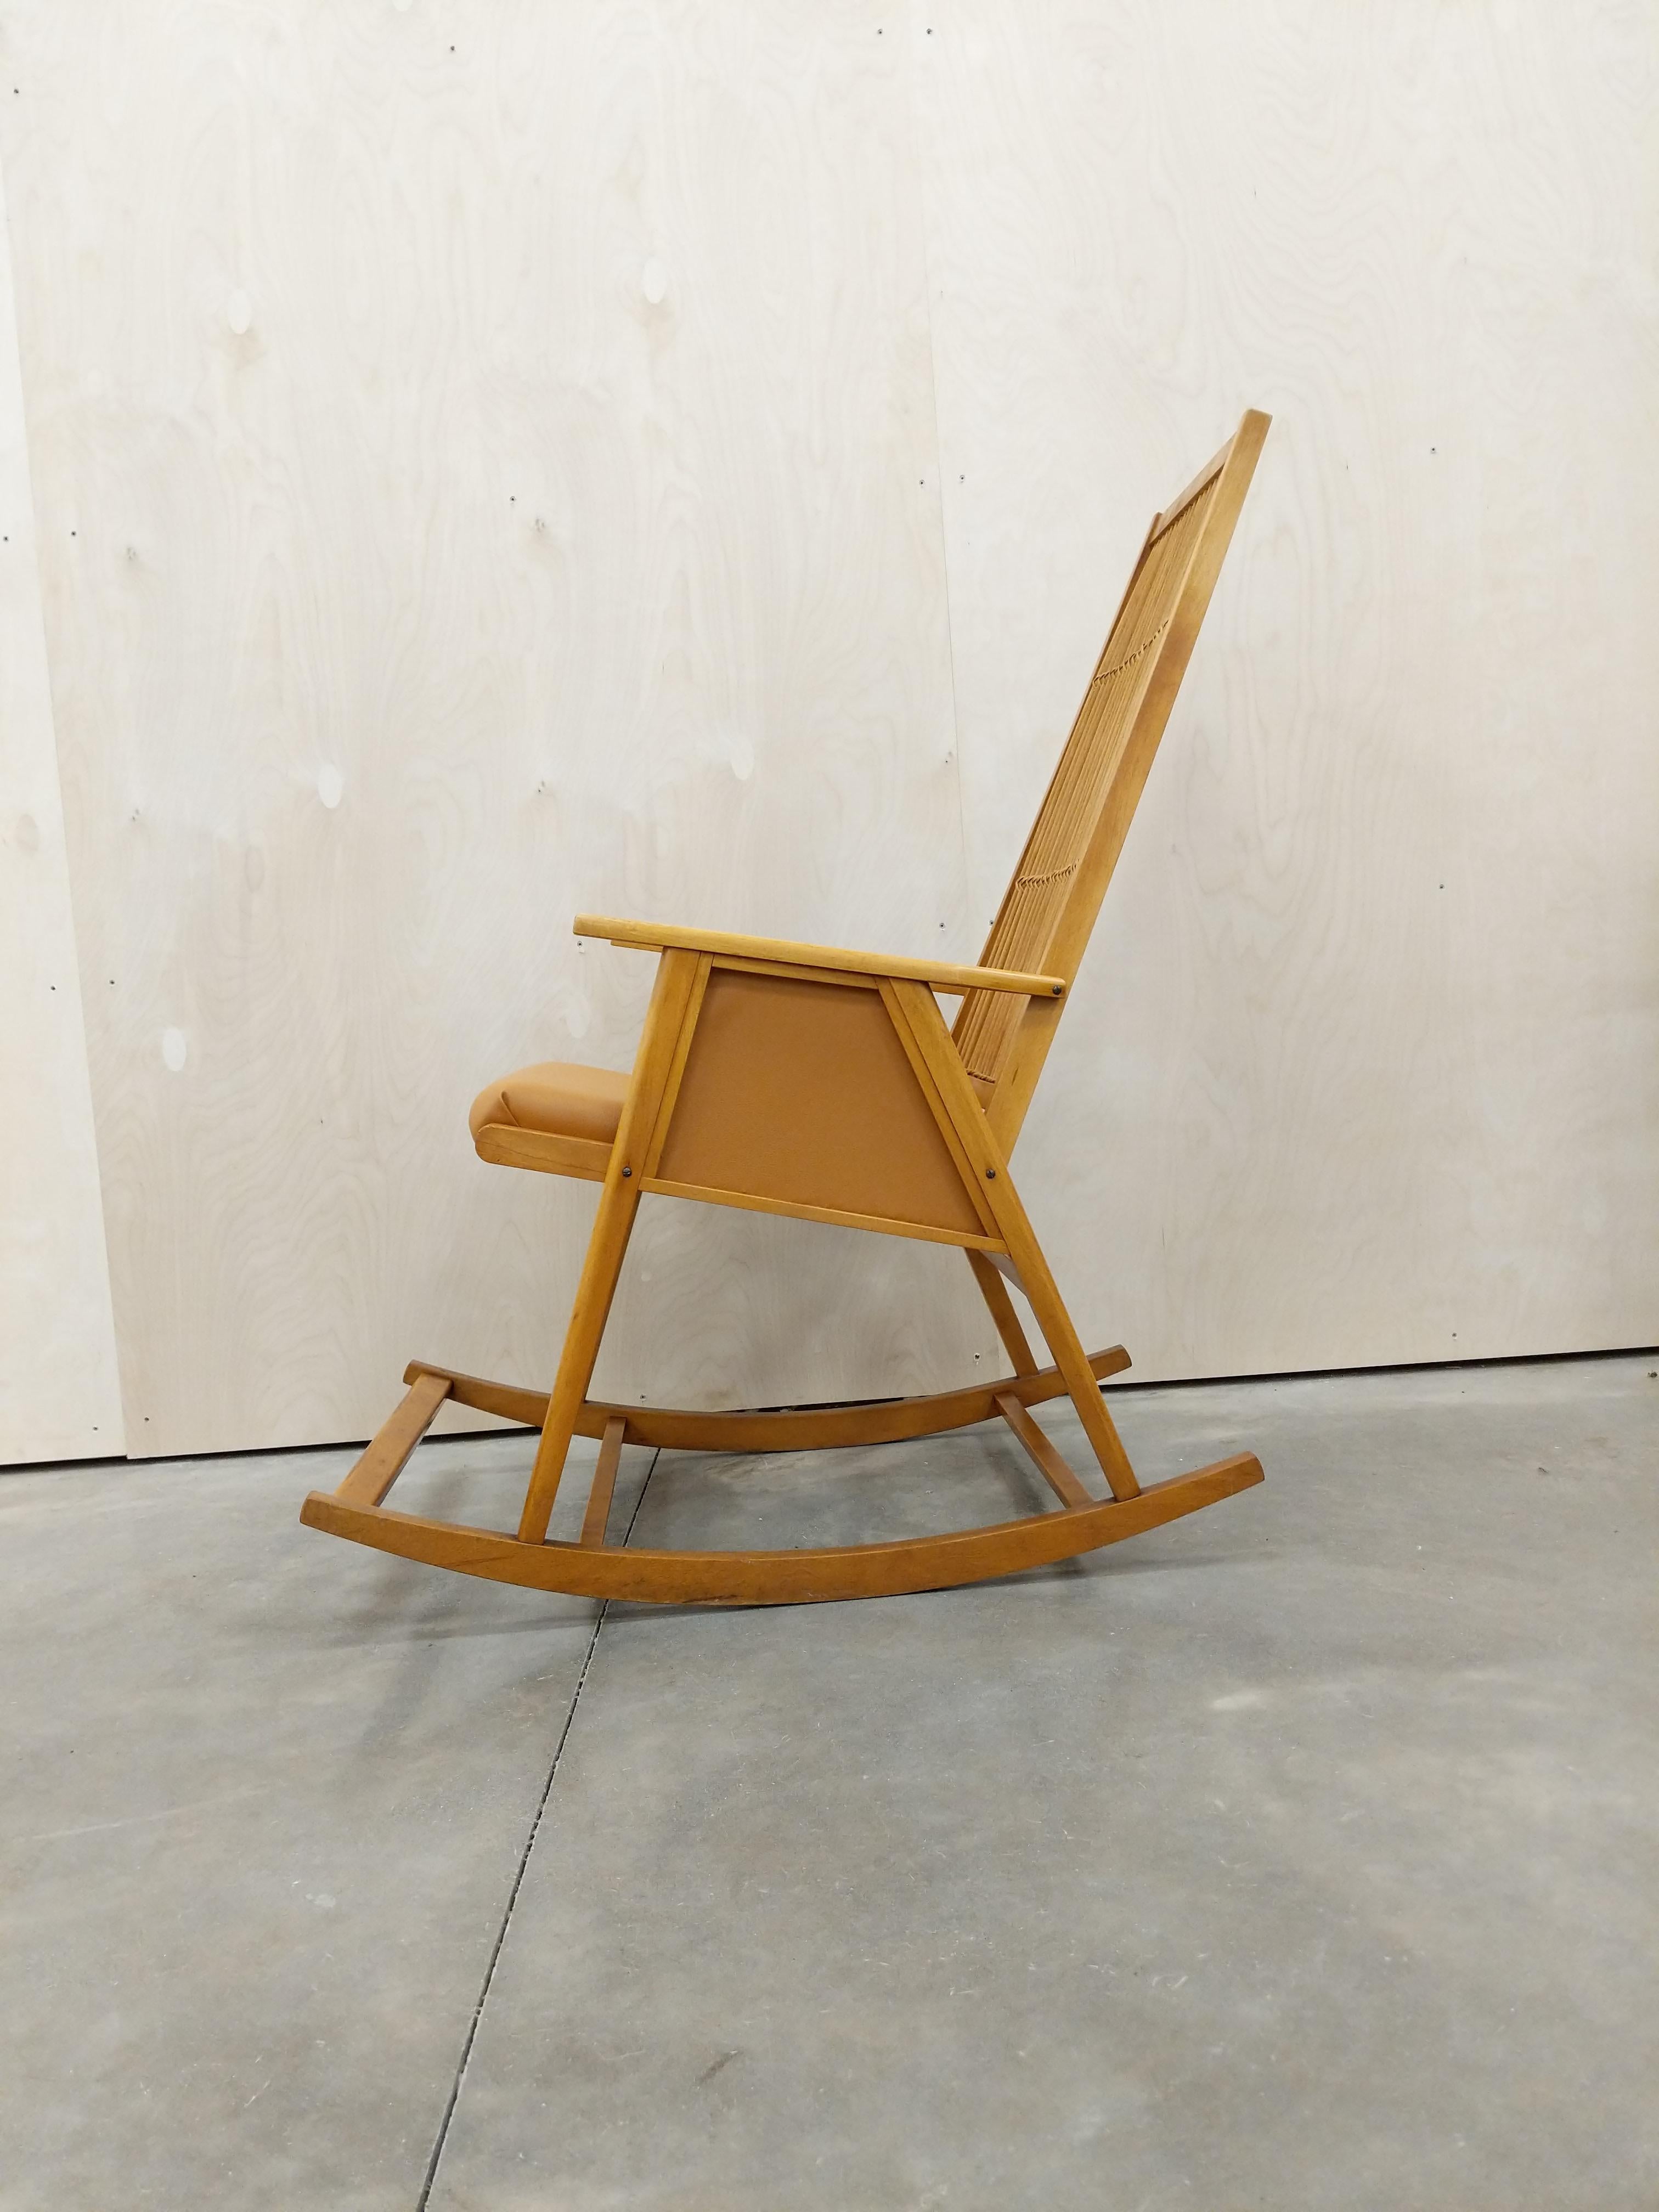 Authentischer tschechischer Vintage-Schaukelstuhl aus der Mitte des Jahrhunderts.

Dieser Stuhl ist in ausgezeichnetem Vintage-Zustand mit brandneuer Knoll-Polsterung!

Wir verwenden für diesen Stuhl das Knoll 